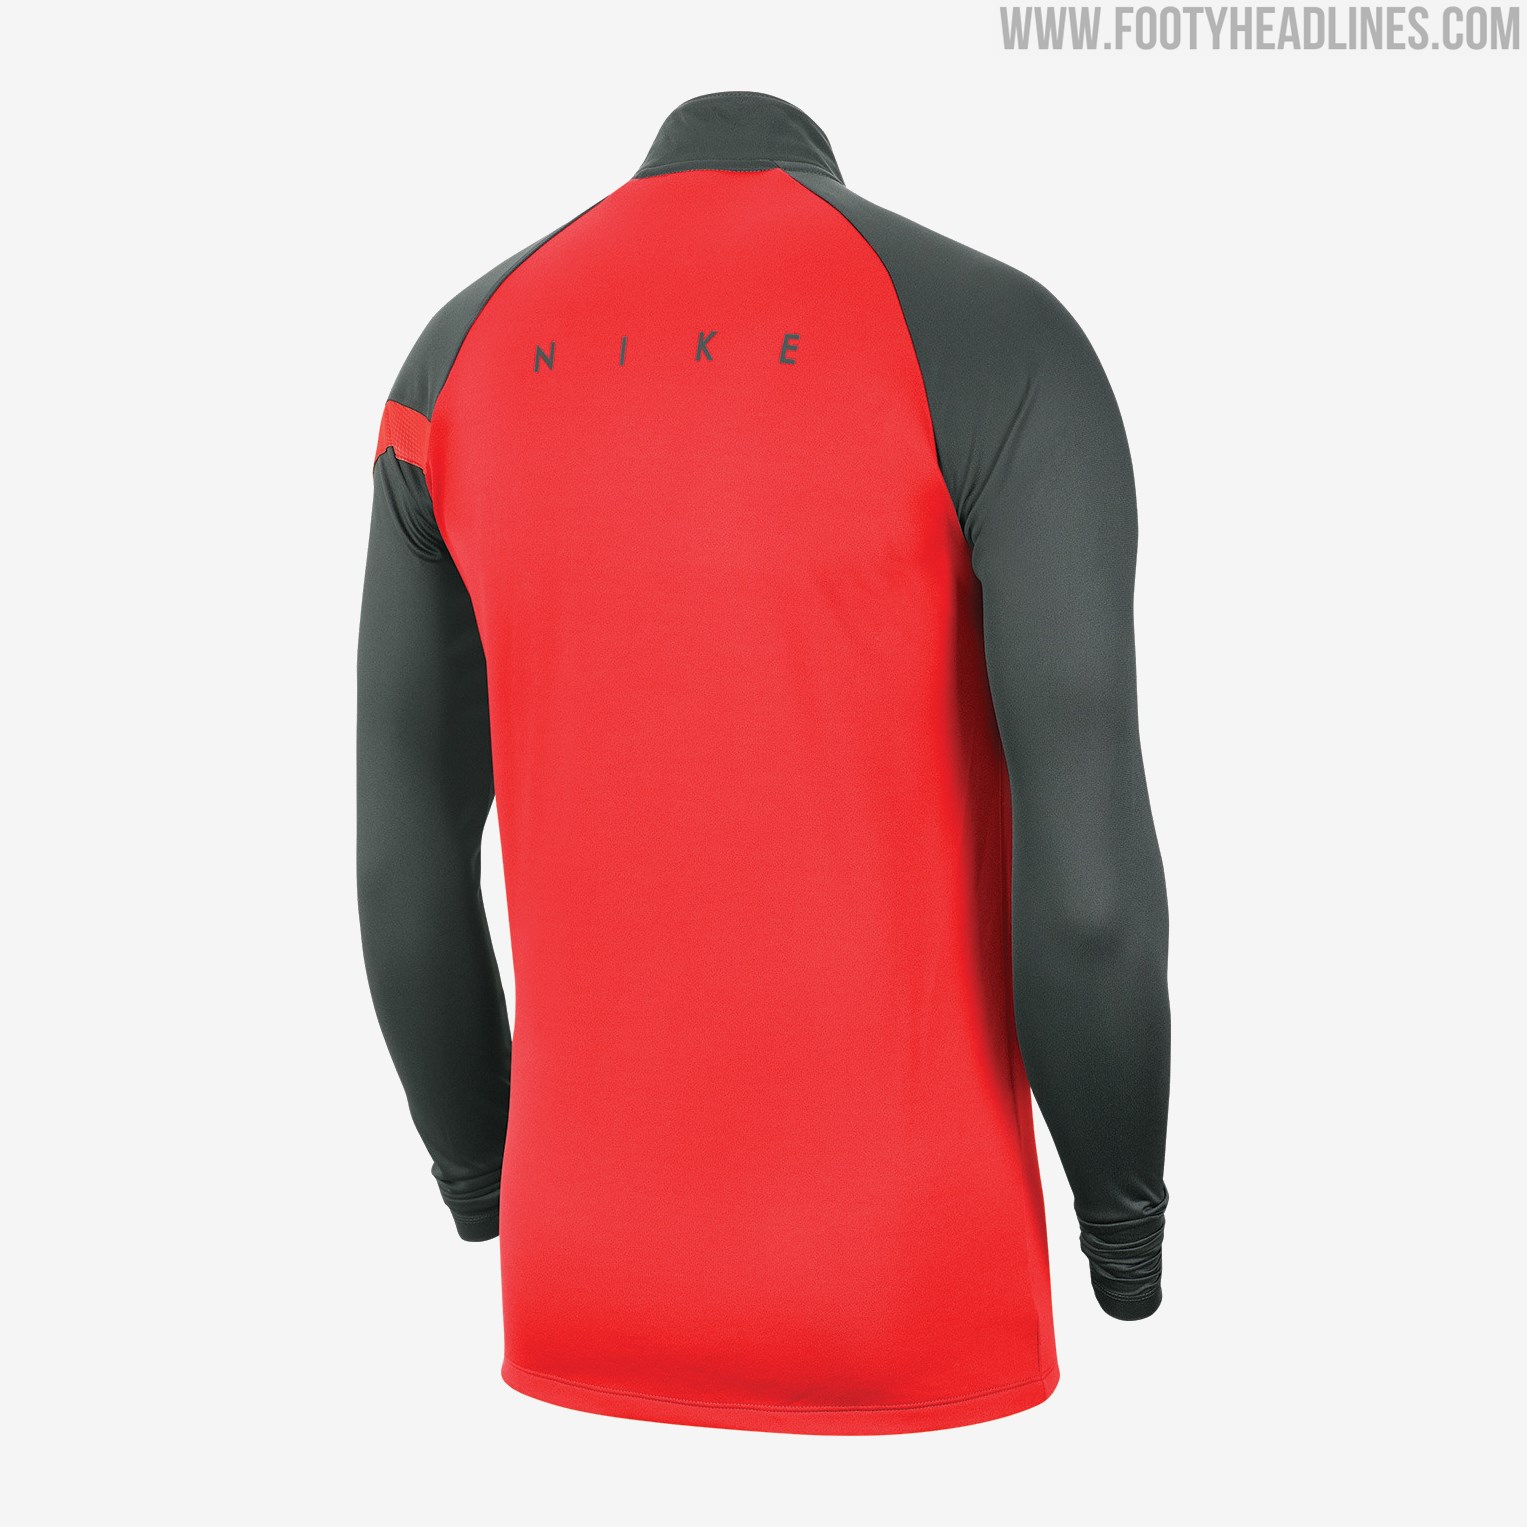 No More Adidas: Nike Sunderland 20-21 Training Kit Revealed - Kit ...